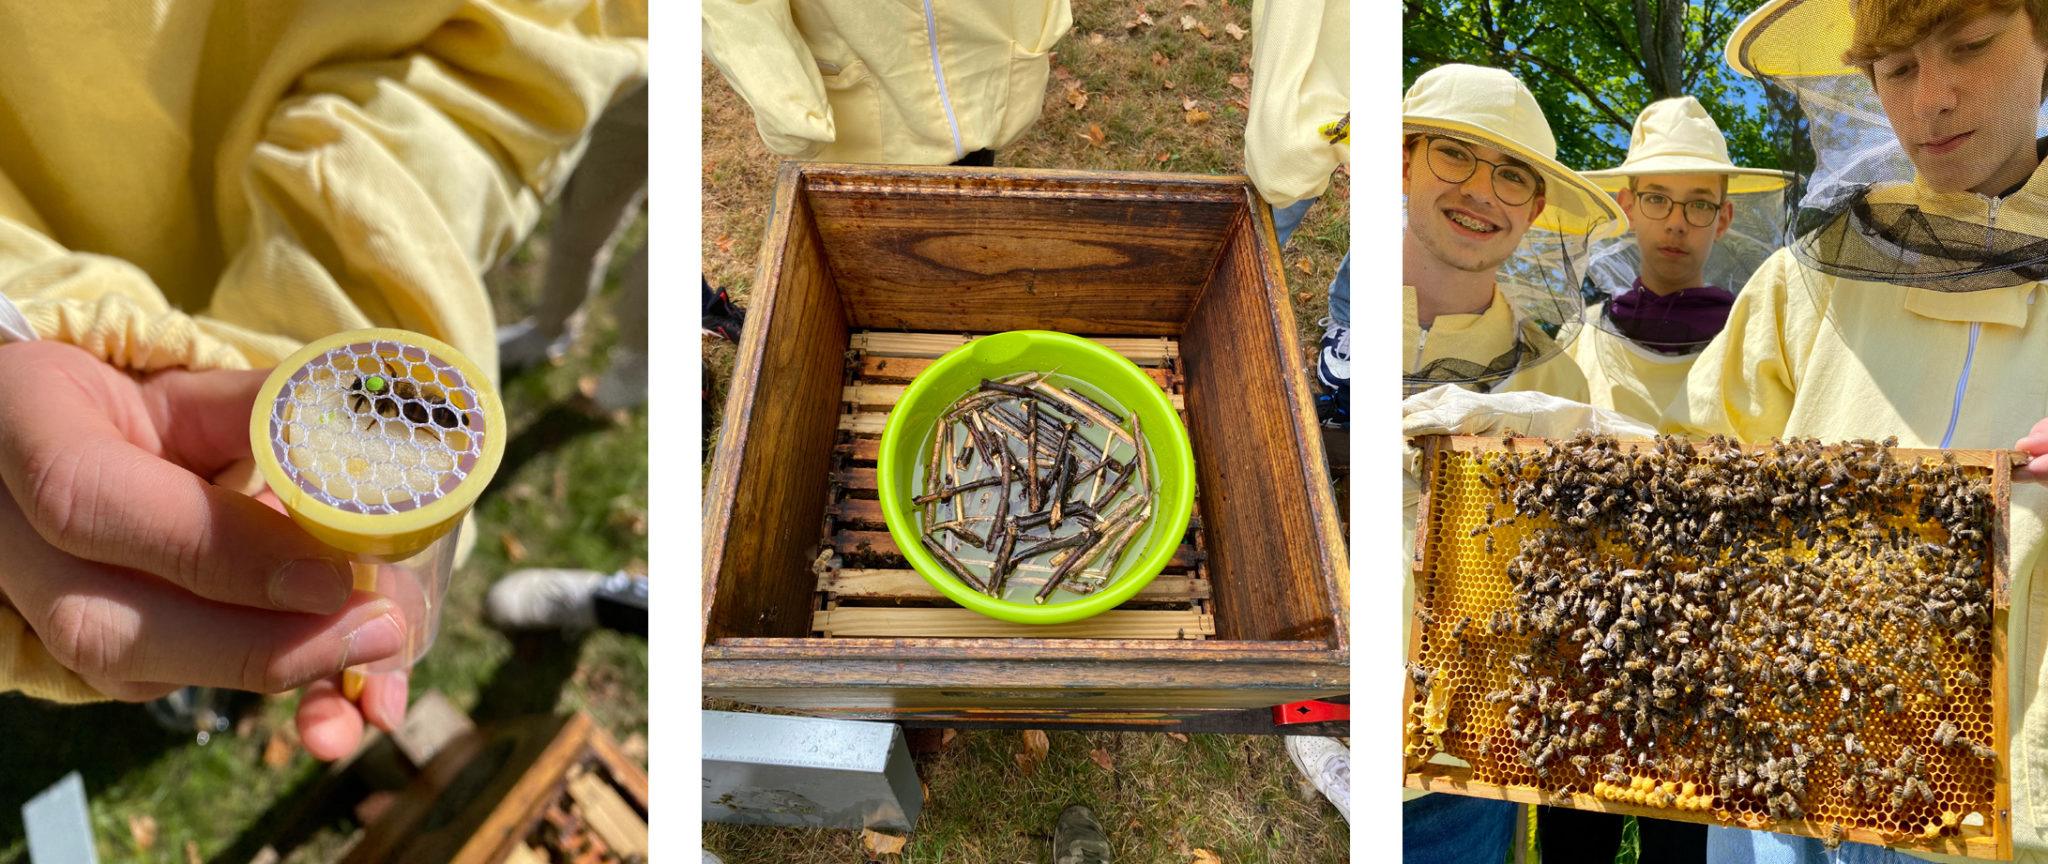 Es sind Bilder der Waben mit Bienen, eines Bienenkastens und einiger Schüler zu sehen, die als Mitglieder der Schulimkerei aktiv an der Honigernte beteiligt waren